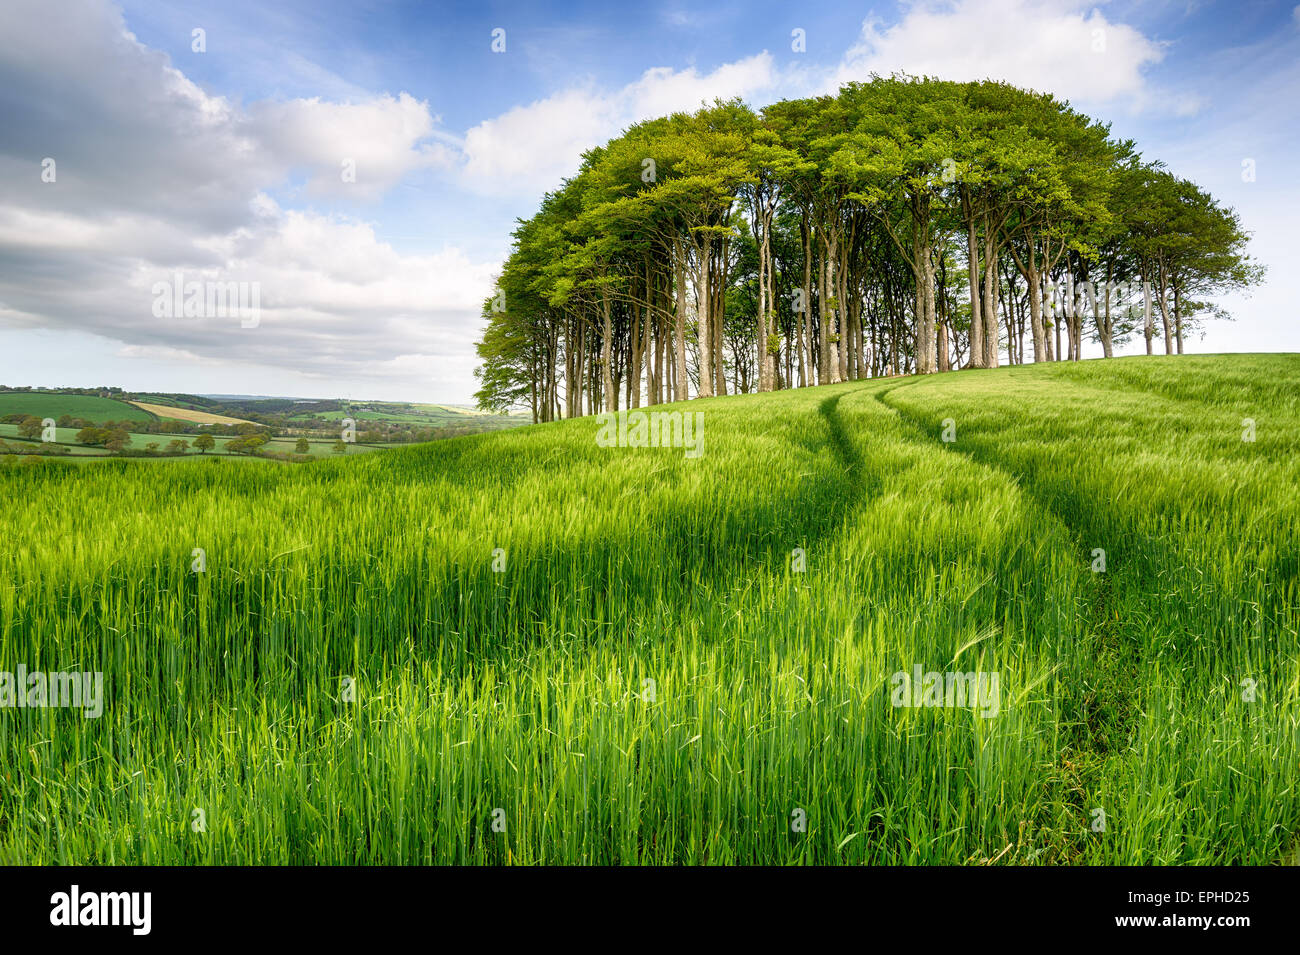 Un peuplement de hêtres poussant dans un champ d'orge verte luxuriante Banque D'Images